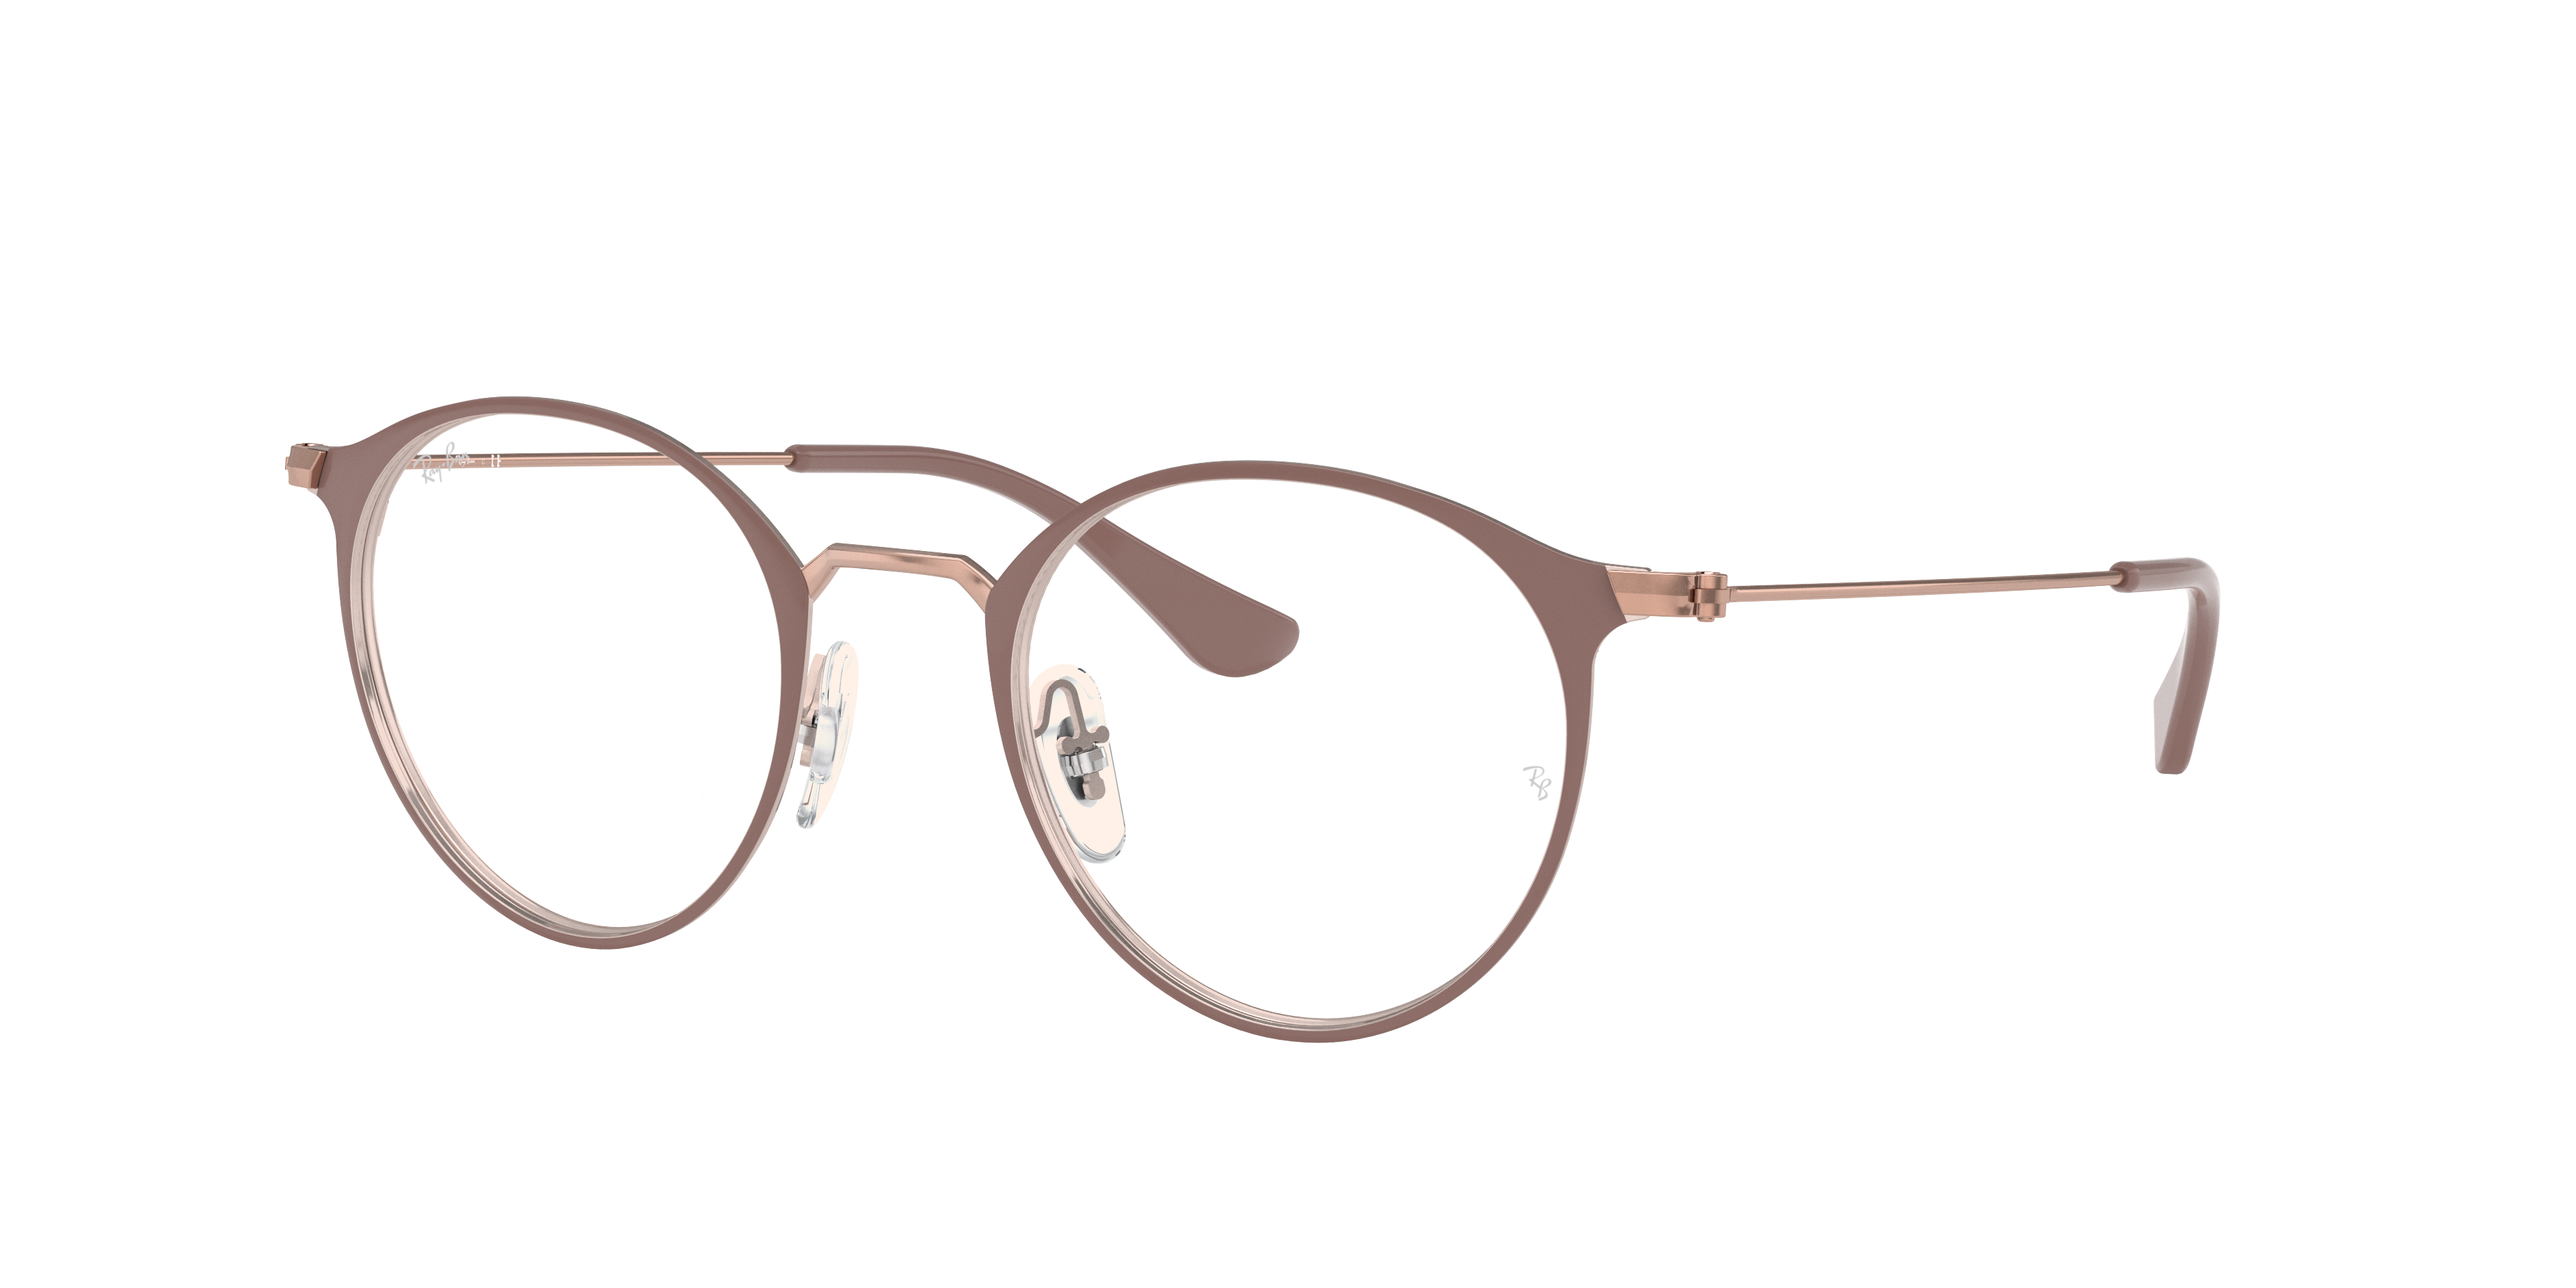 Rb6378 Optics Eyeglasses with Light Brown Frame | Ray-Ban®